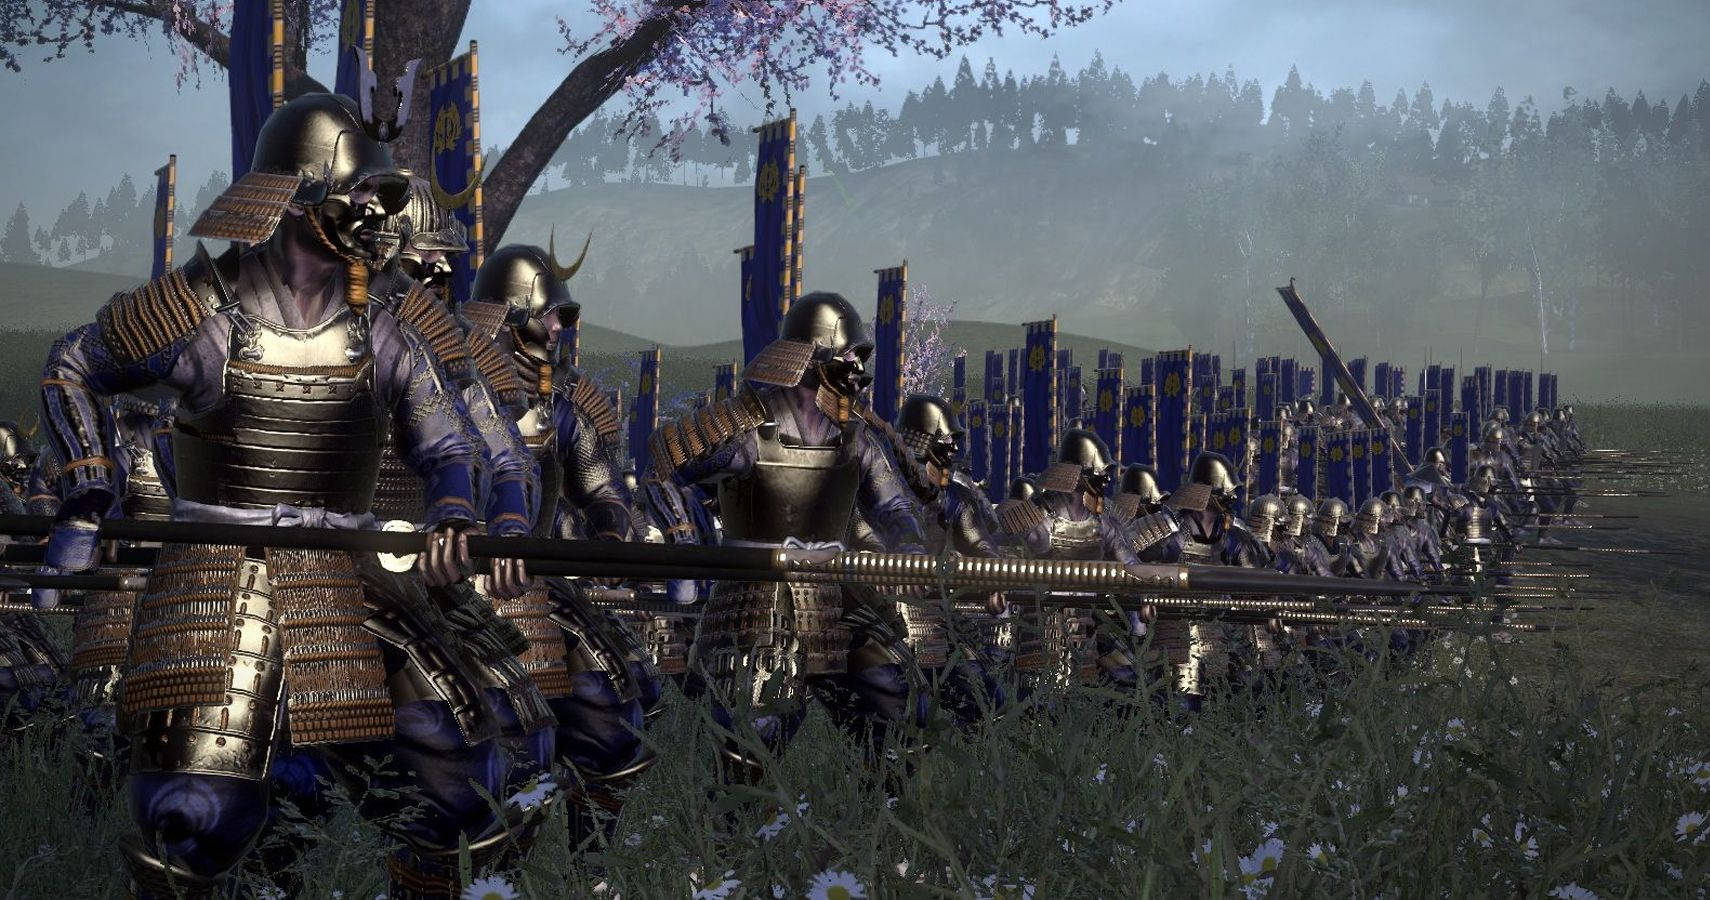 På Standby - Shogun 2 Total War Bayoneter på standby Wallpaper